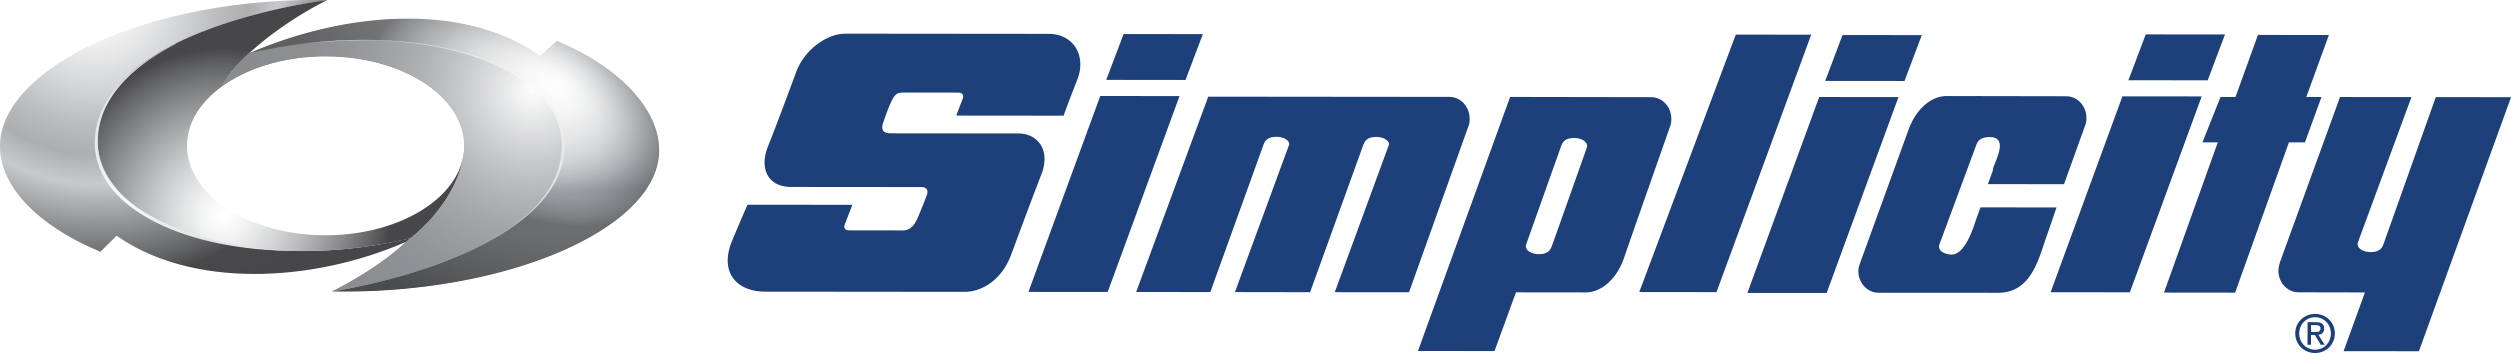 Coia Sales Logo